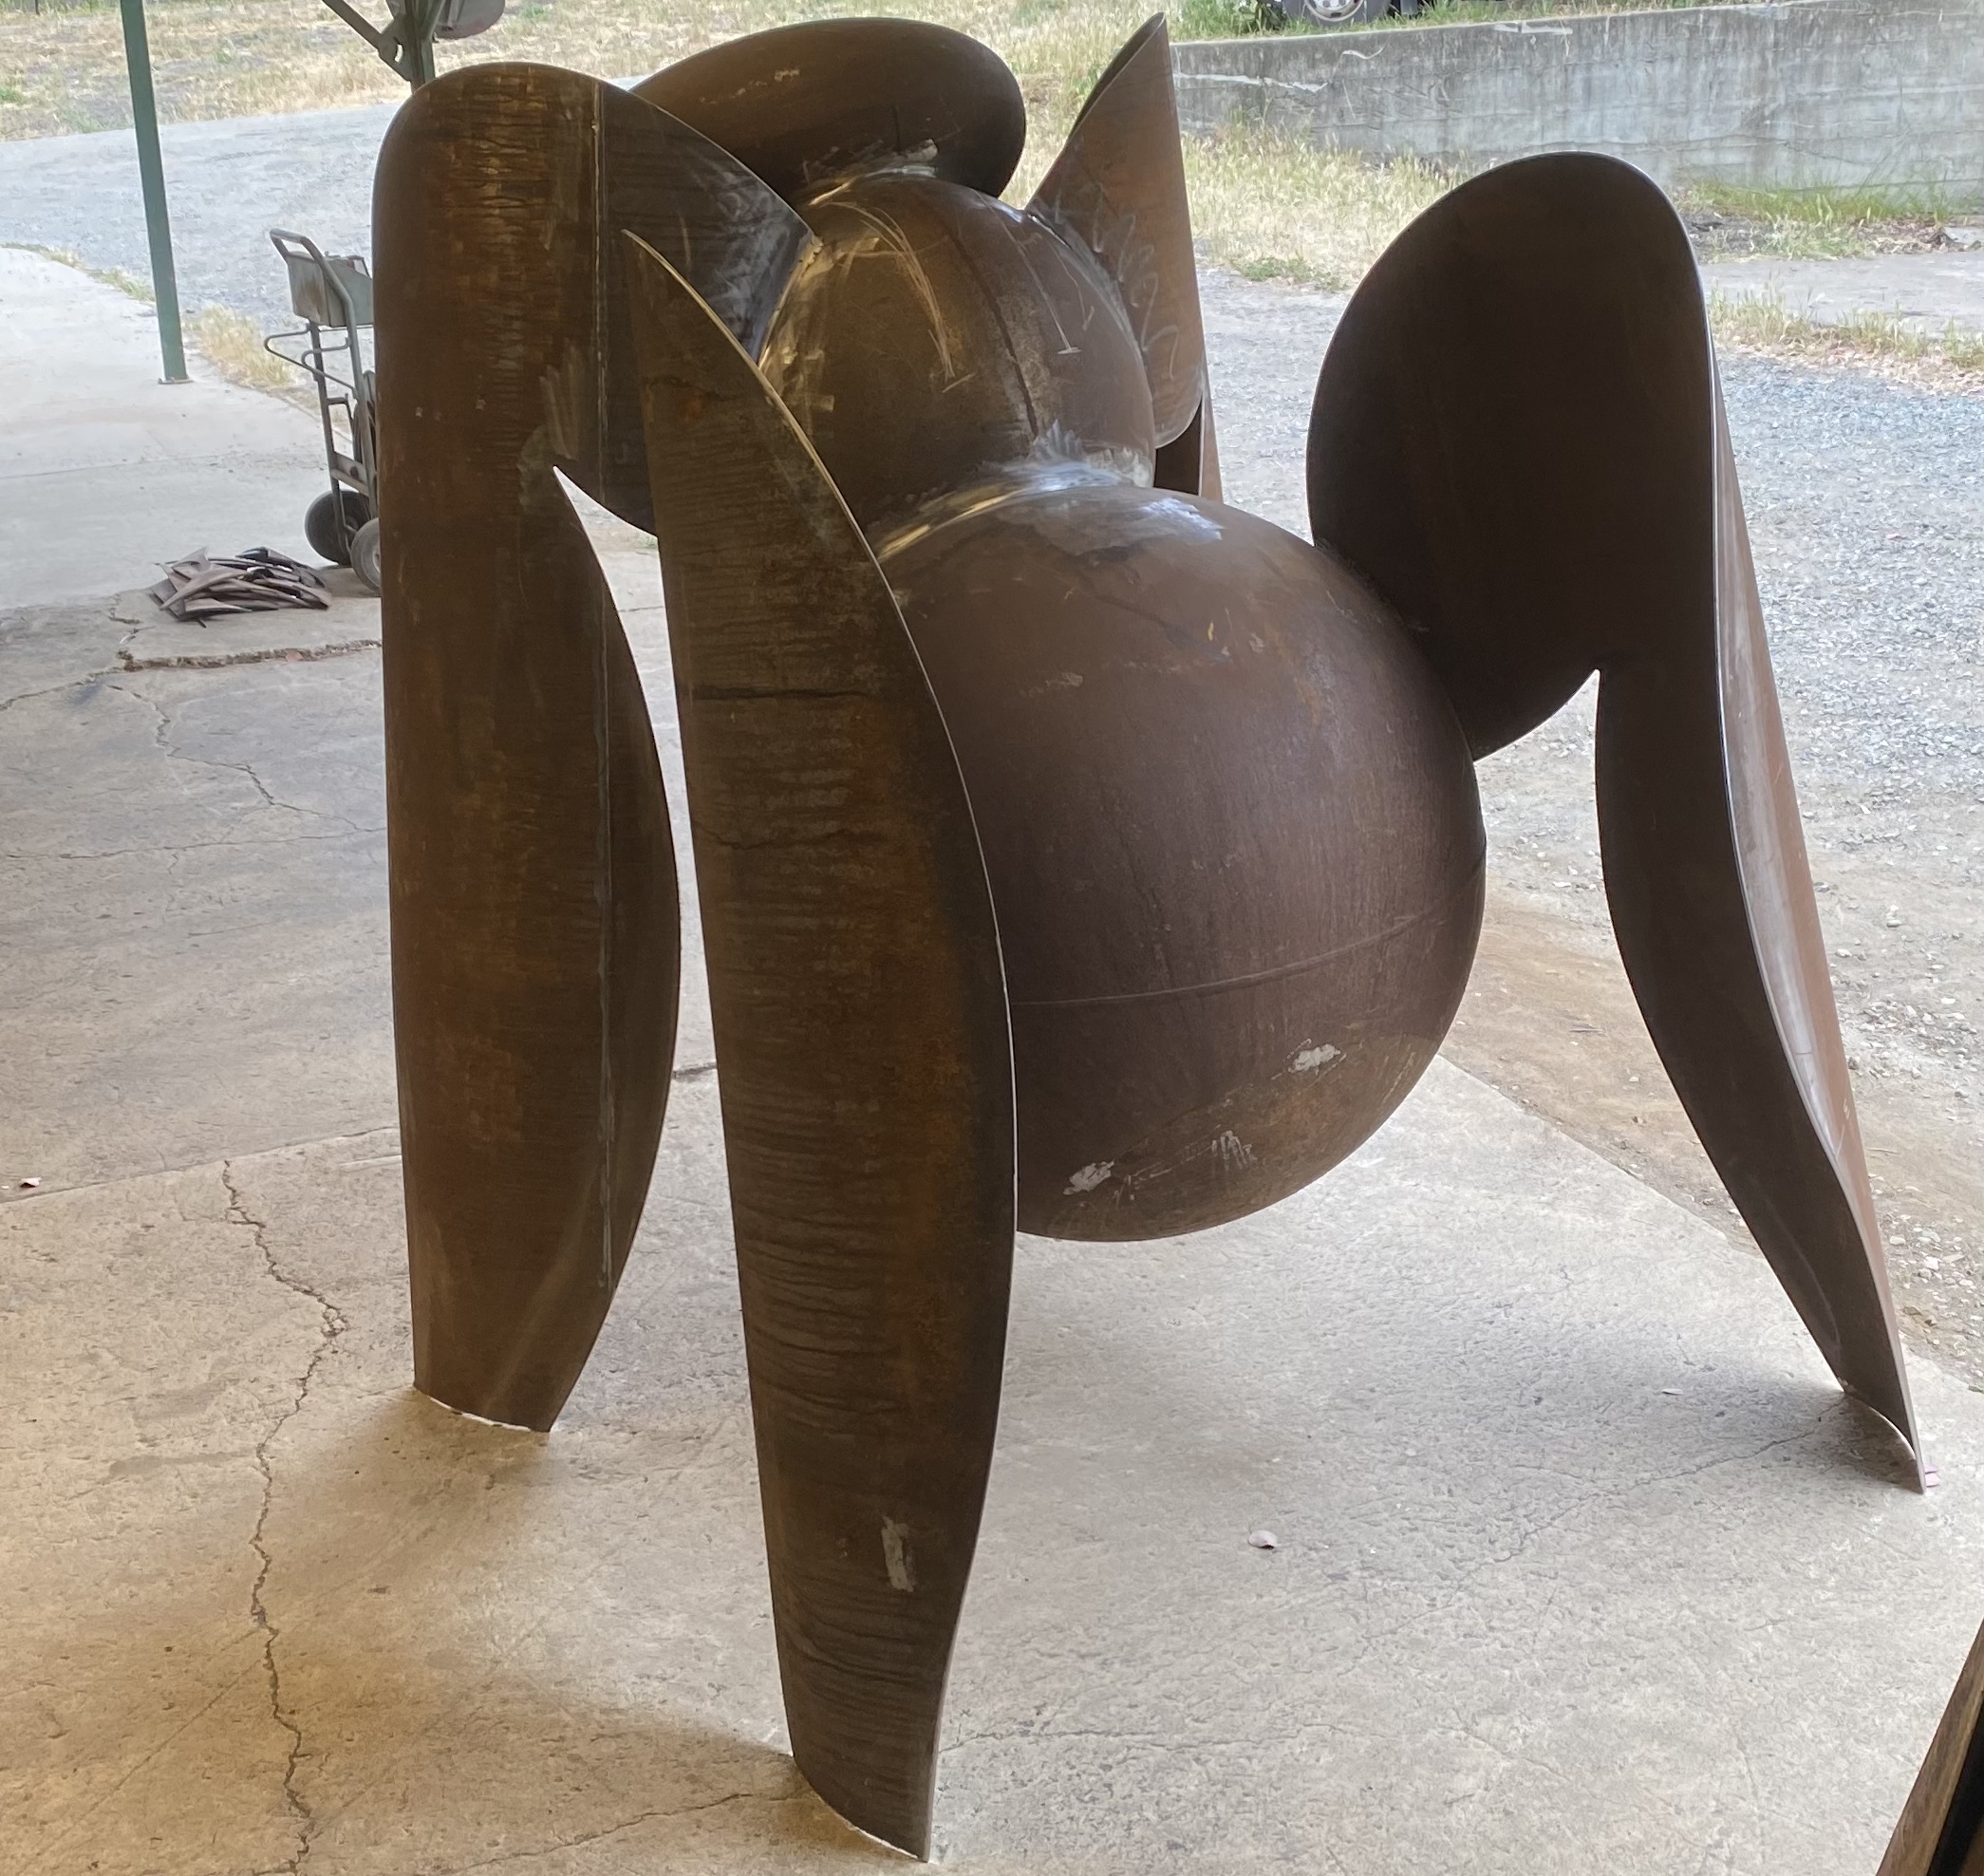 Hornet mascot sculpture